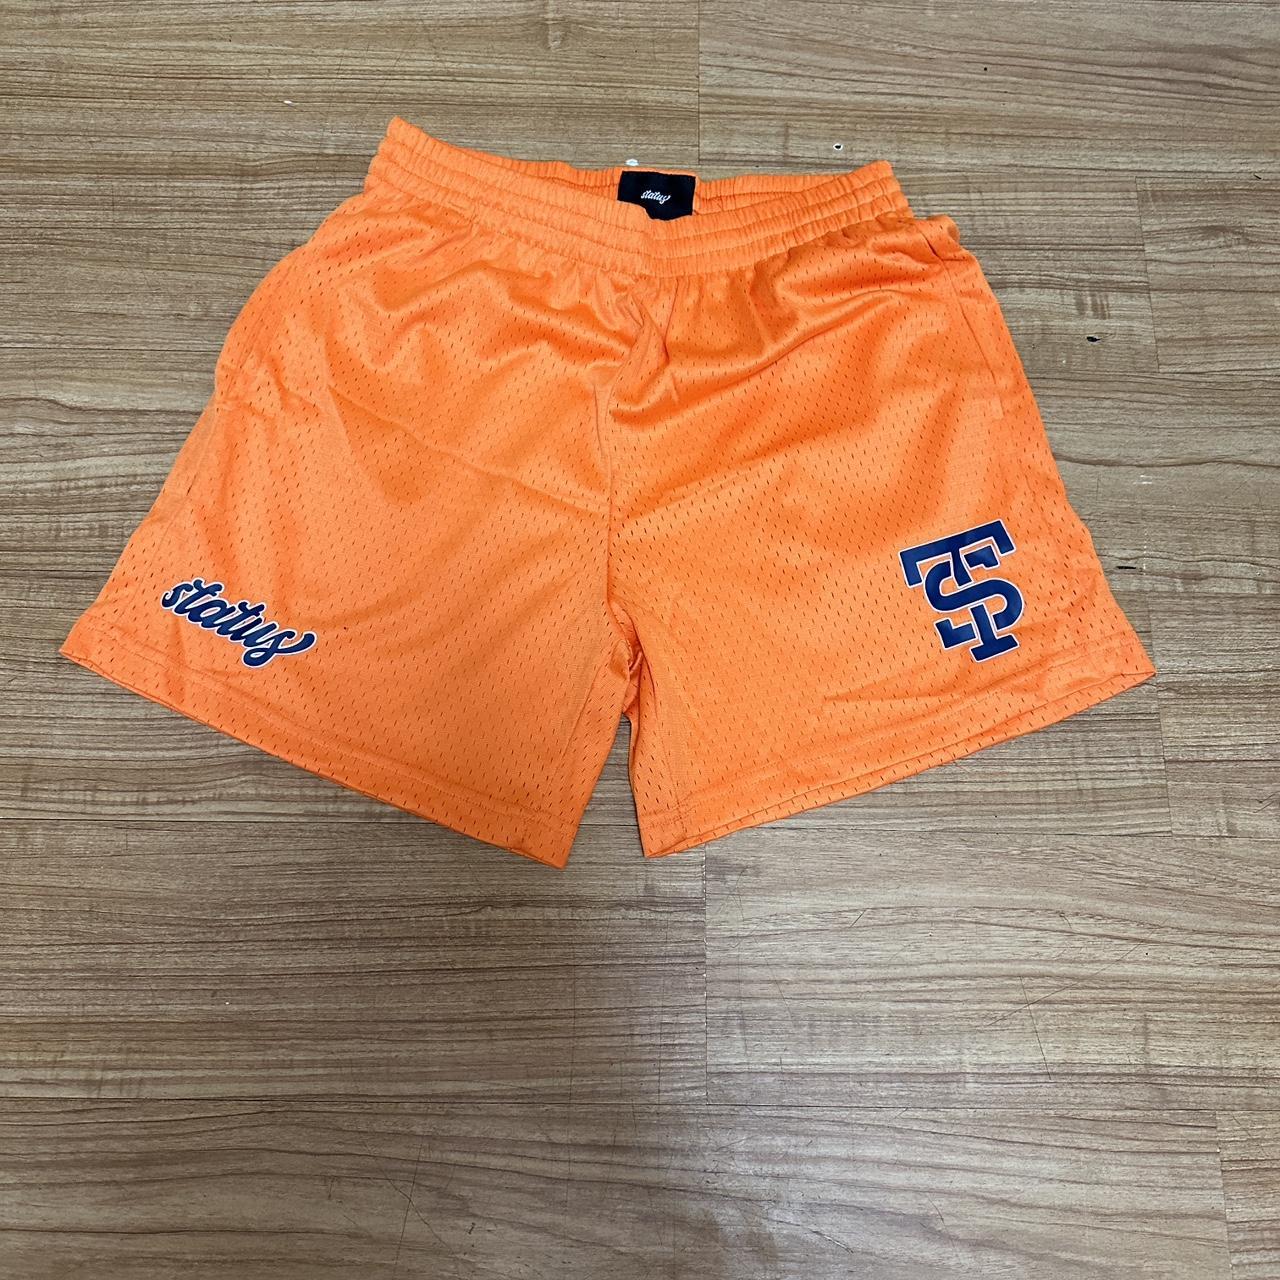 NO PAYPAL‼️ Buffbunny athletic shorts. Super - Depop